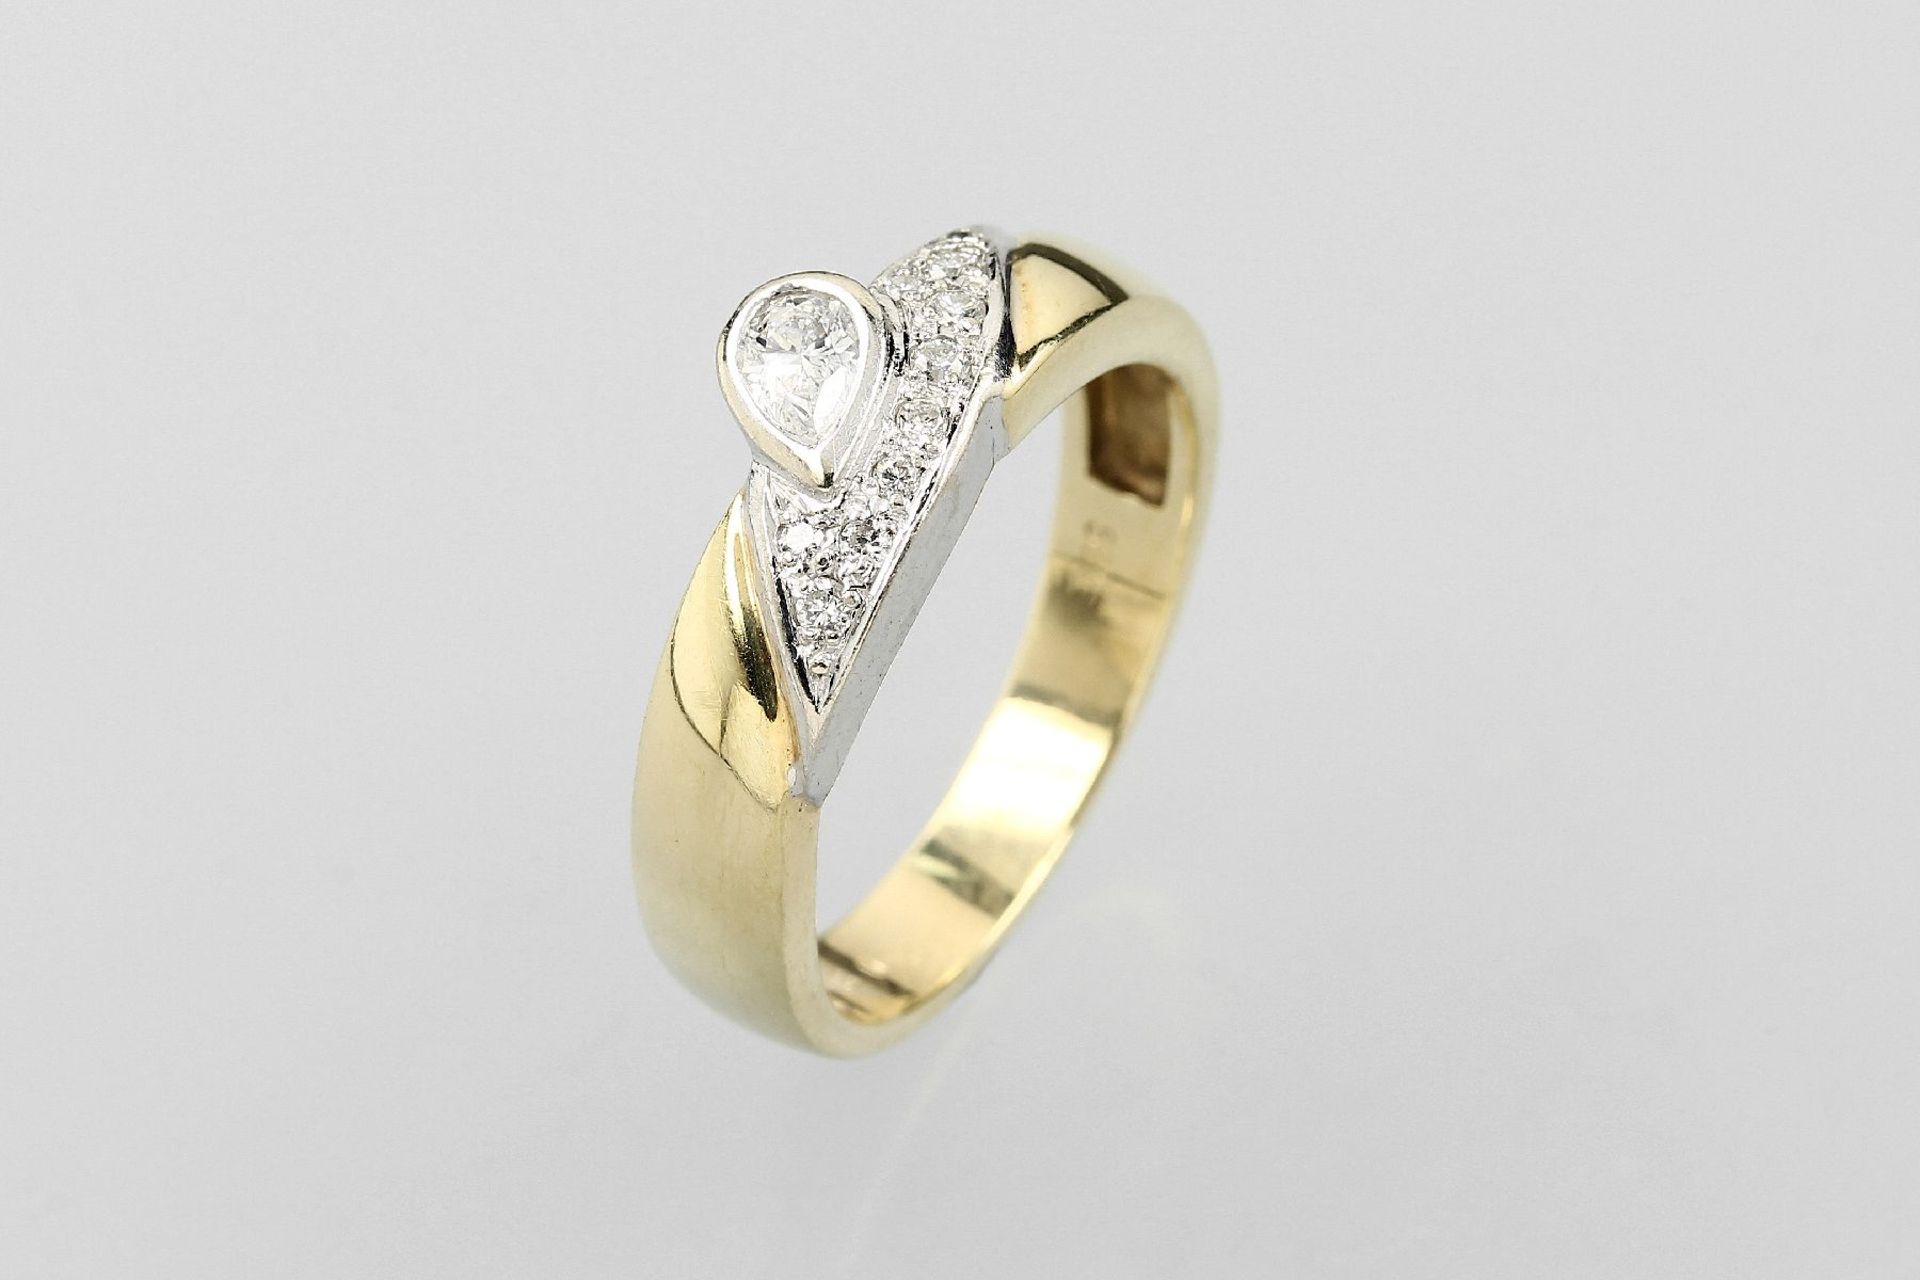 14 kt Gold Ring mit Diamanten, GG/WG 585/ 000, Diamanttropfen und Brillanten zus. ca. 0.30 ct Weiß/